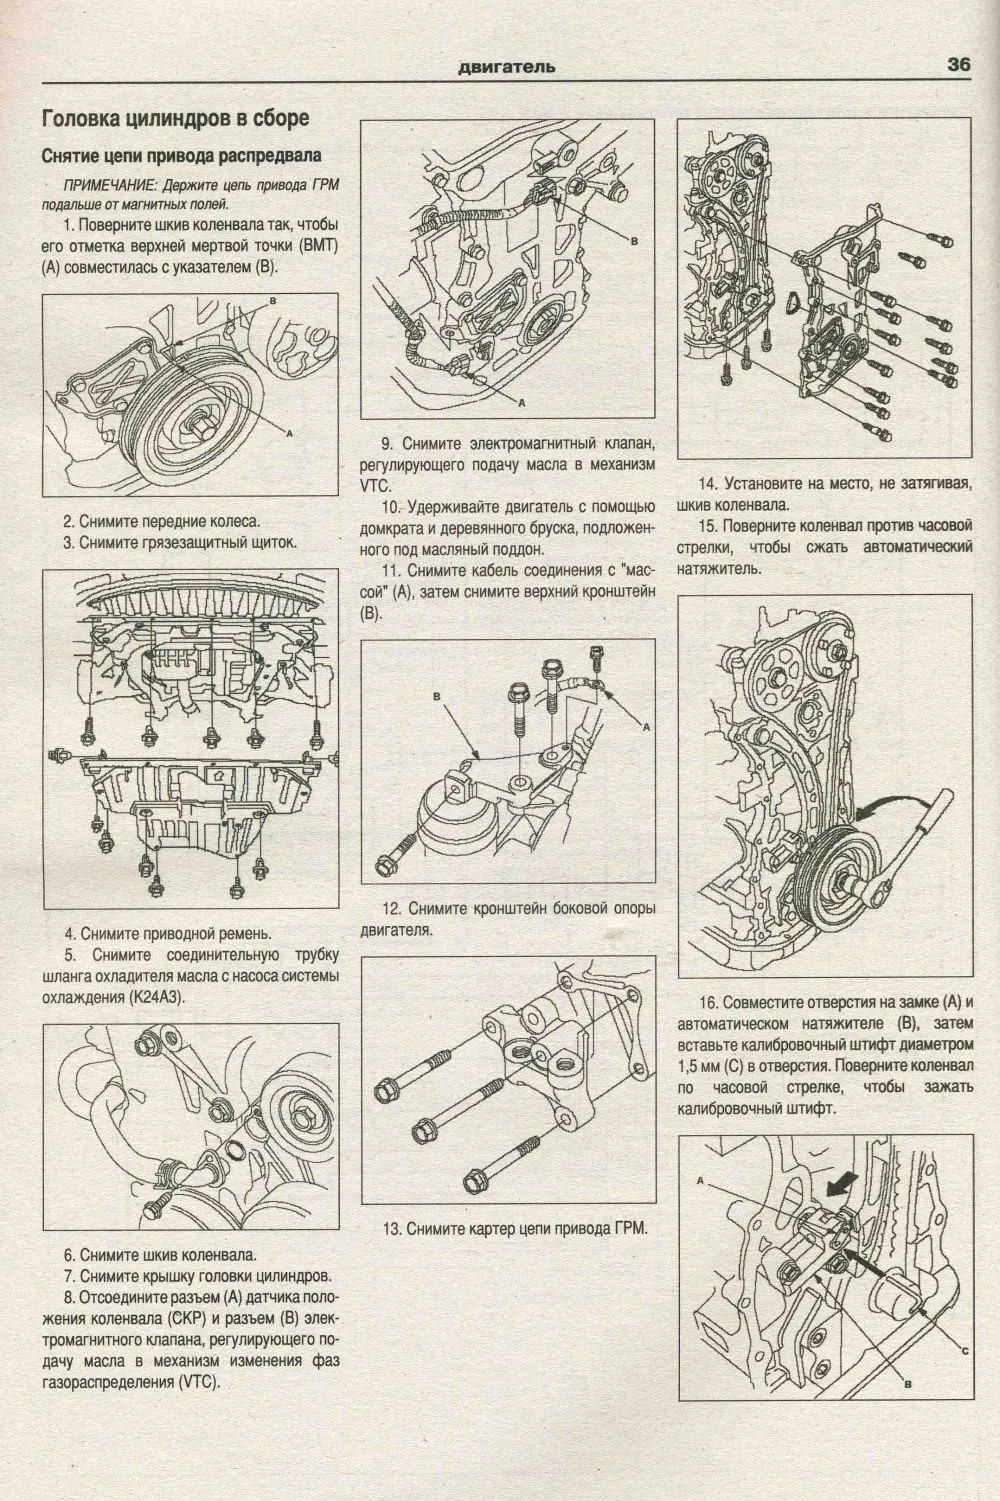 Книга Honda Accord 2002-2008 бензин, электросхемы. Руководство по ремонту и эксплуатации автомобиля. Атласы автомобилей